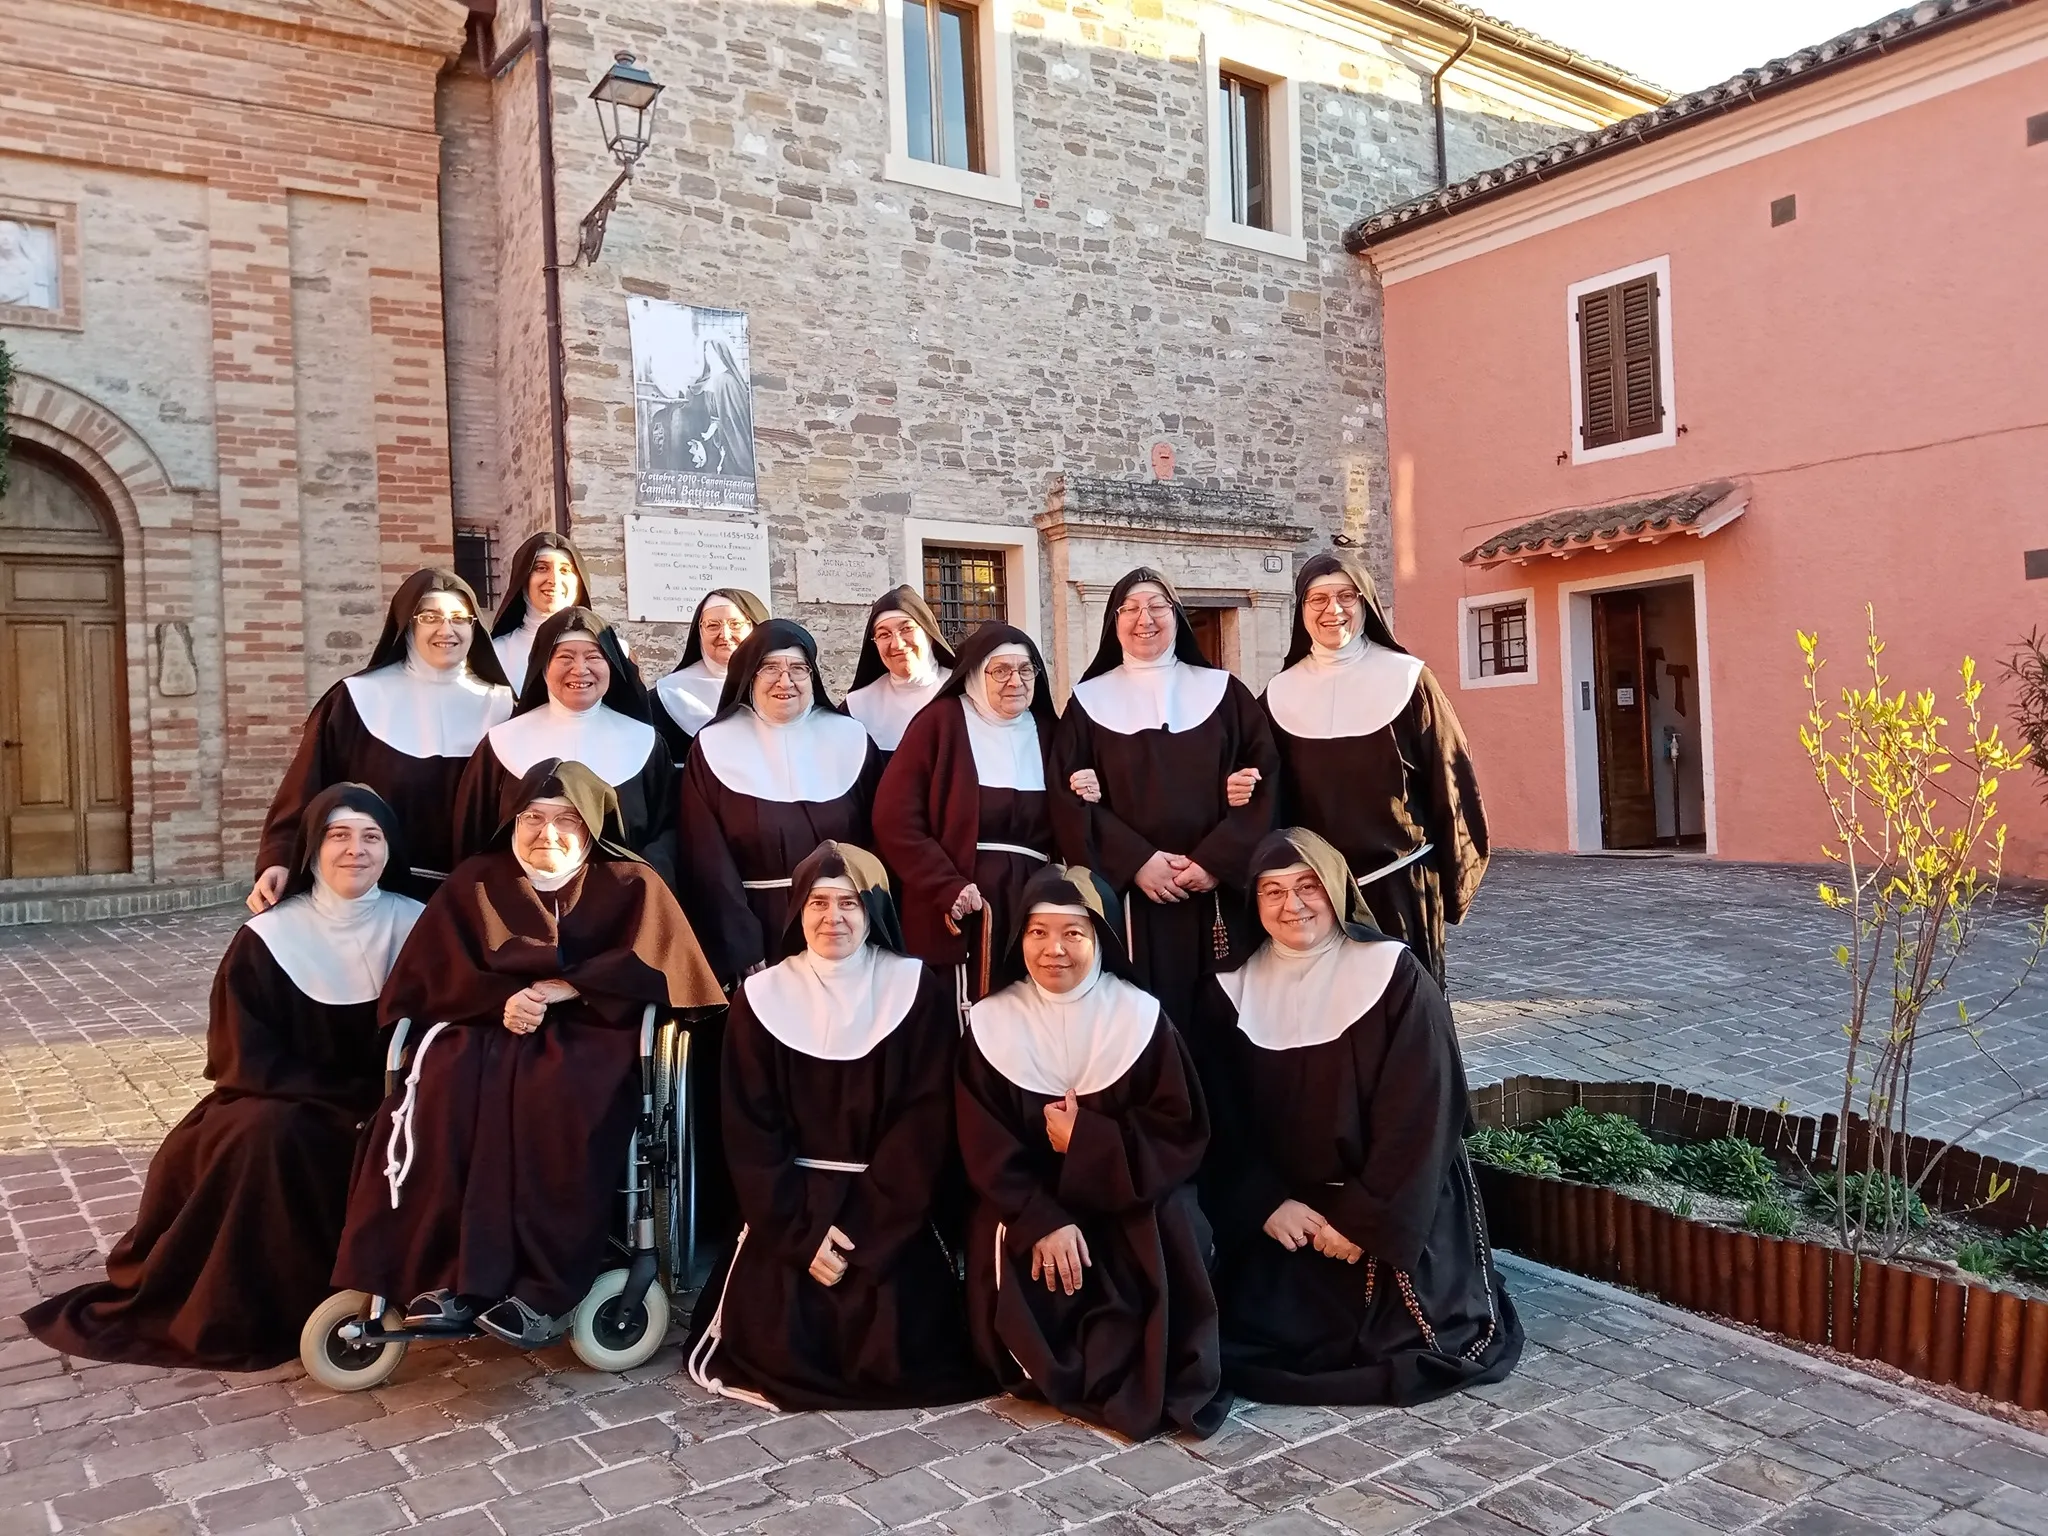 Le Clarisse di San Severino Marche oggi